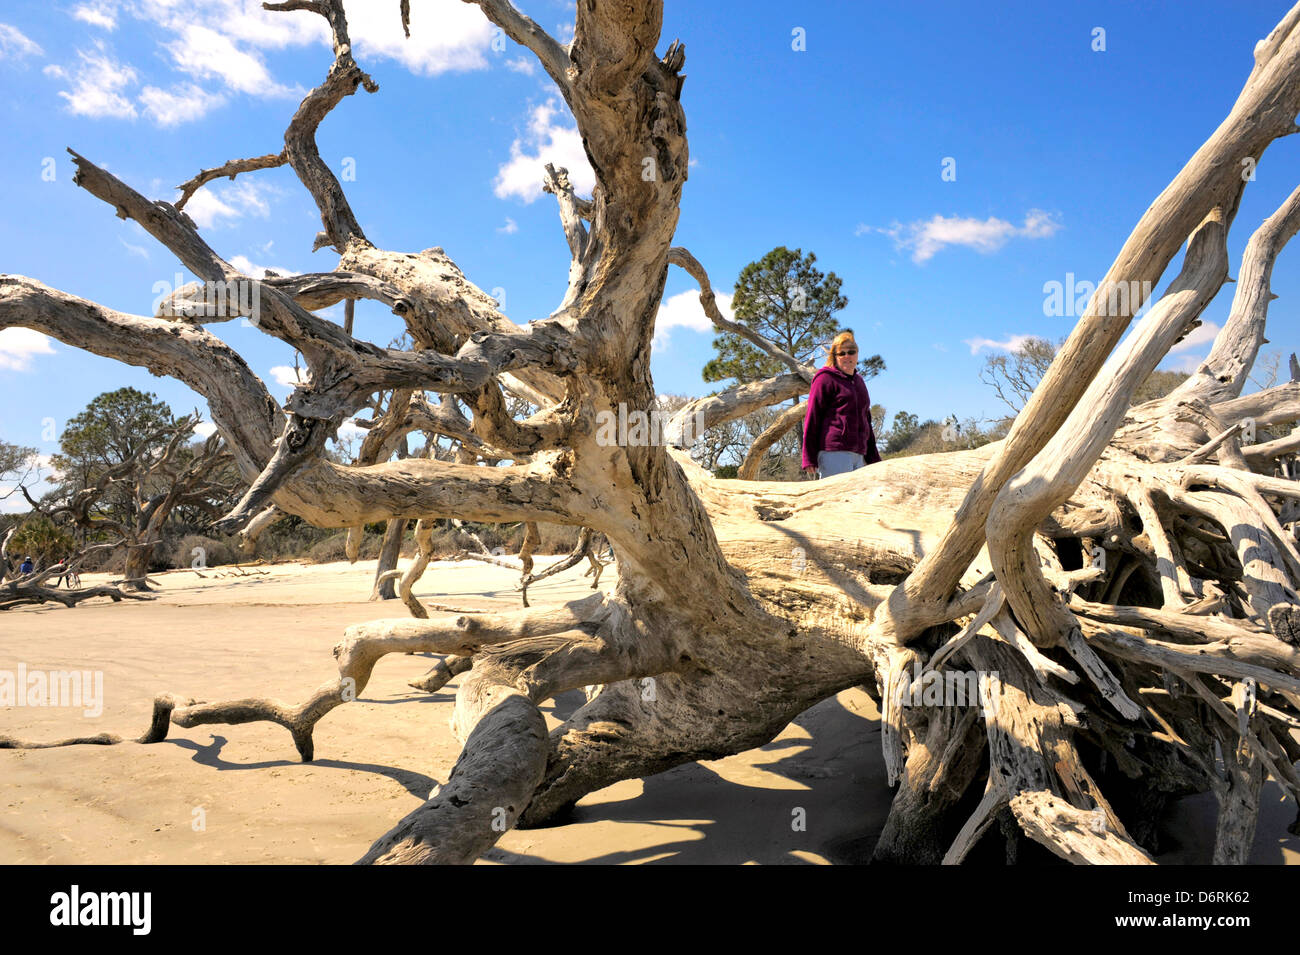 Une femme debout sur un grand morceau de bois flotté Driftwood Beach Jekyll Island en Géorgie La Géorgie l'un des la plupart des plages isolées. Banque D'Images